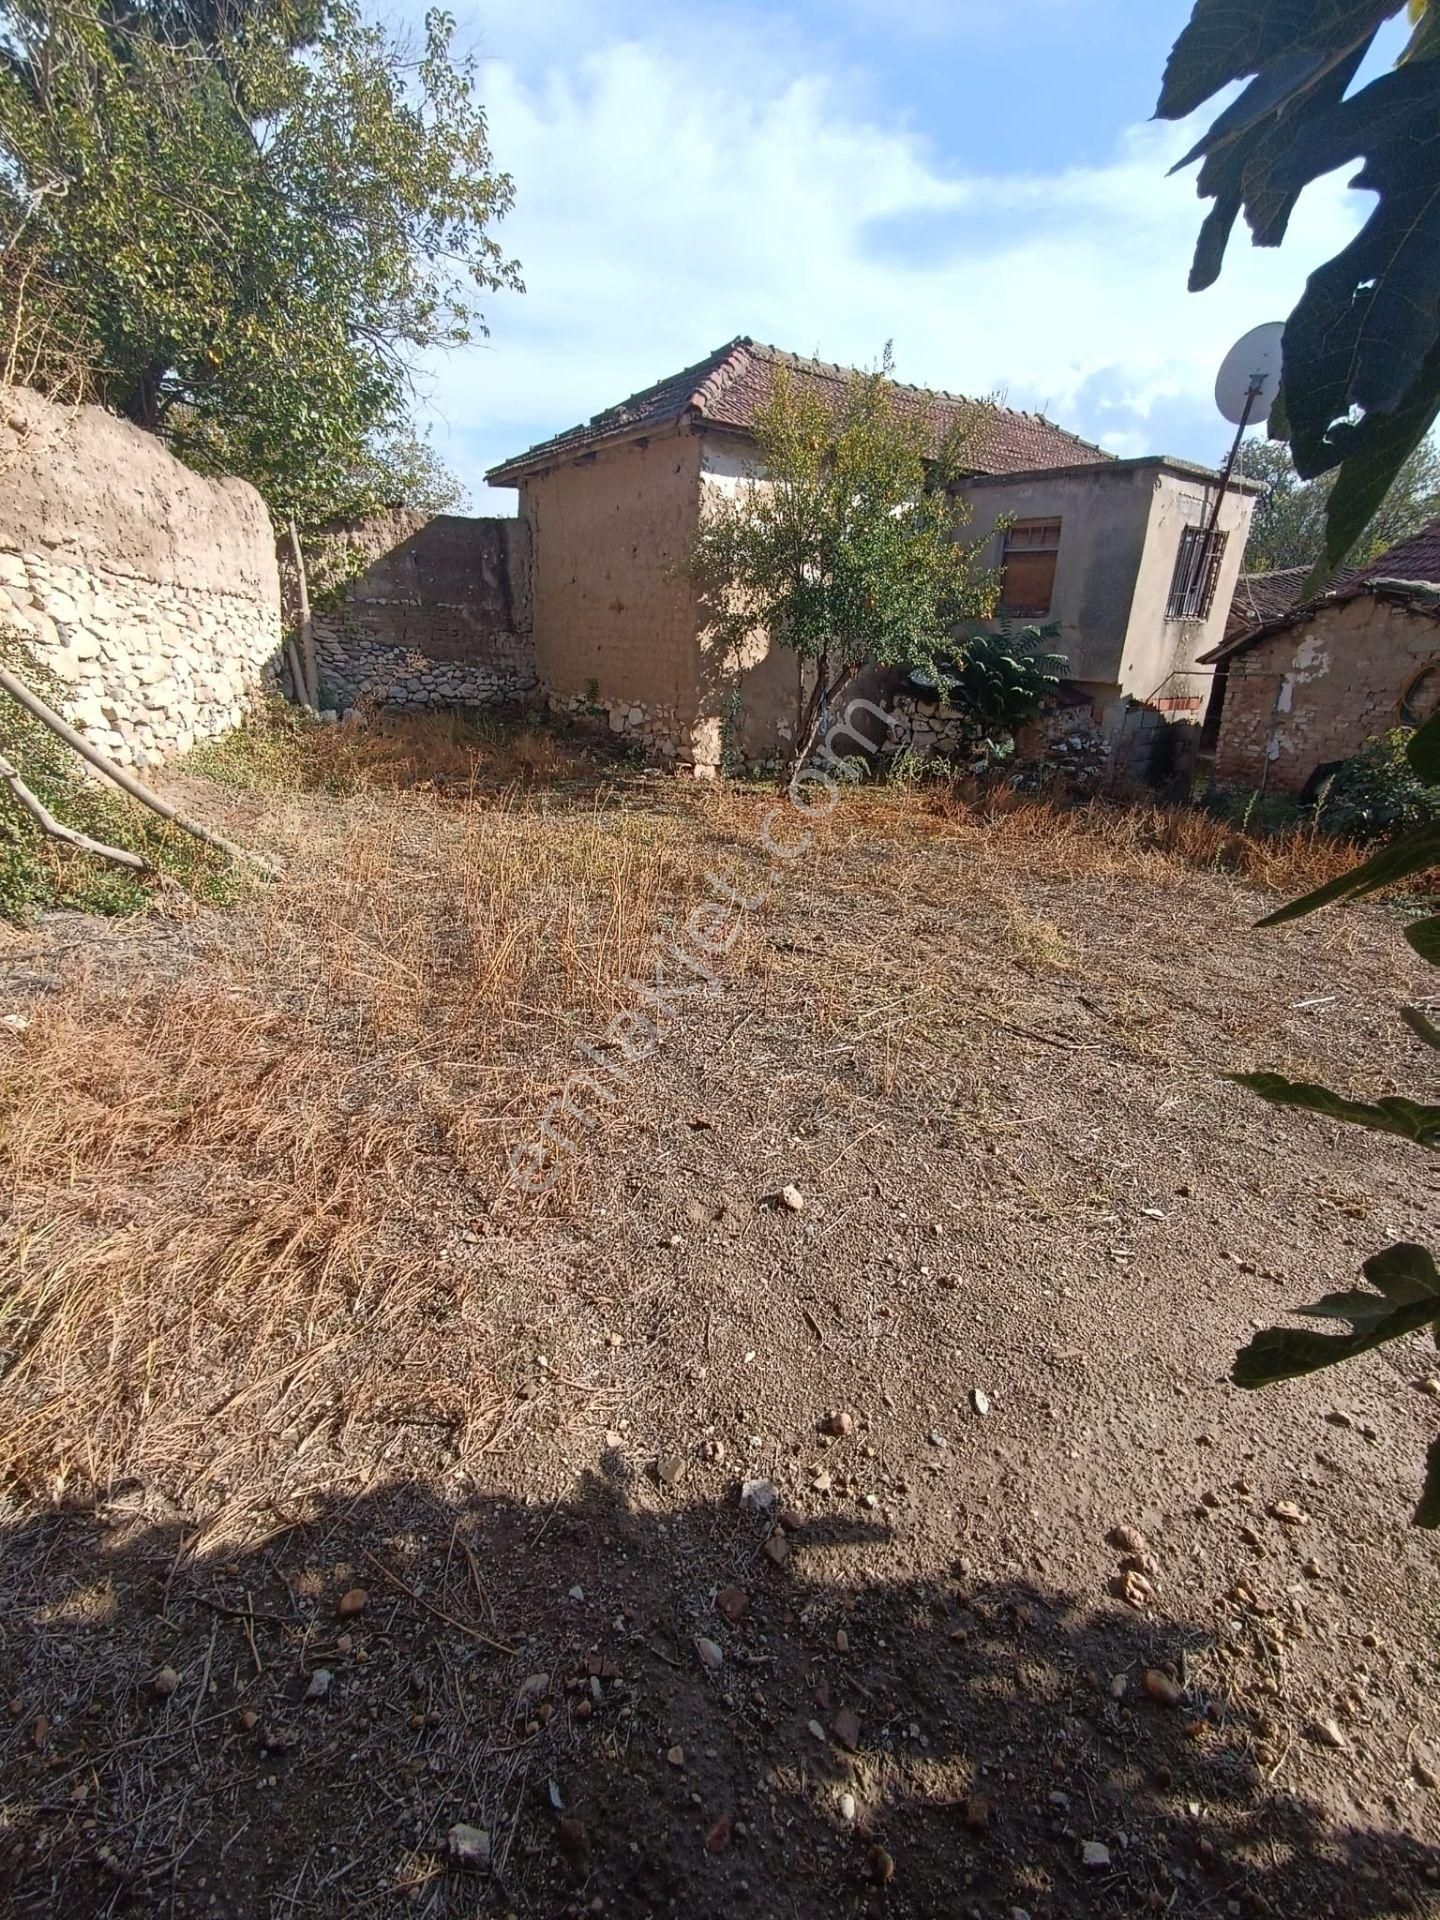 Saruhanlı Gümülceli Satılık Daire  gümülceli'de satılık içinde 2 ev olan bahçeli müstkil ev